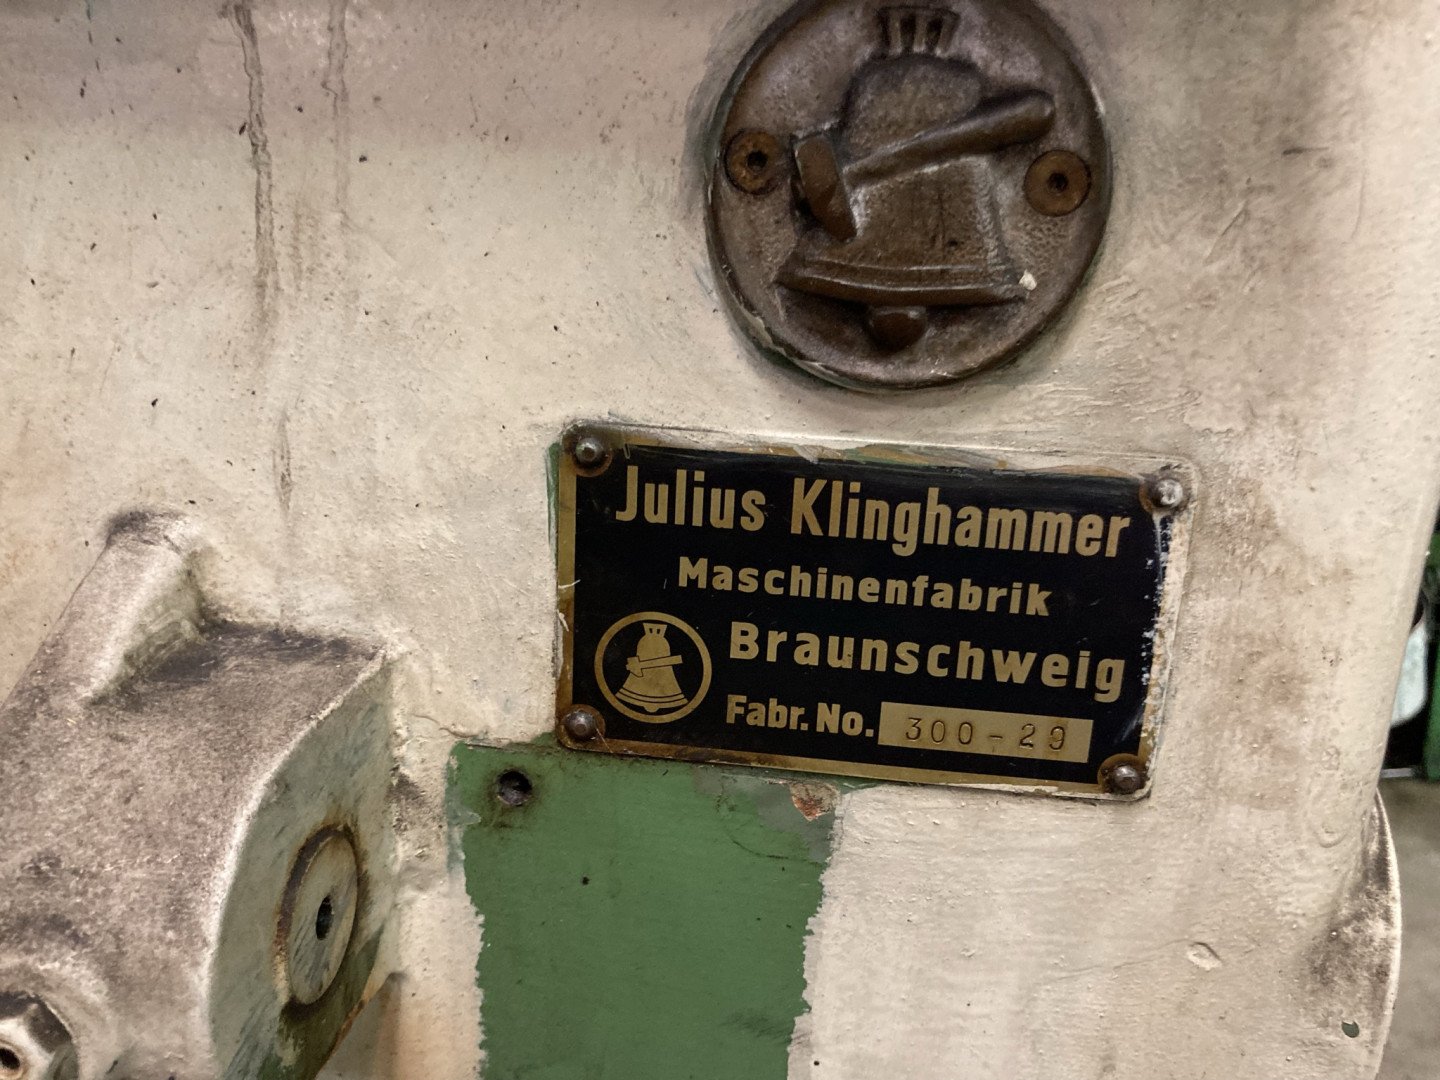 Klinghammer 300